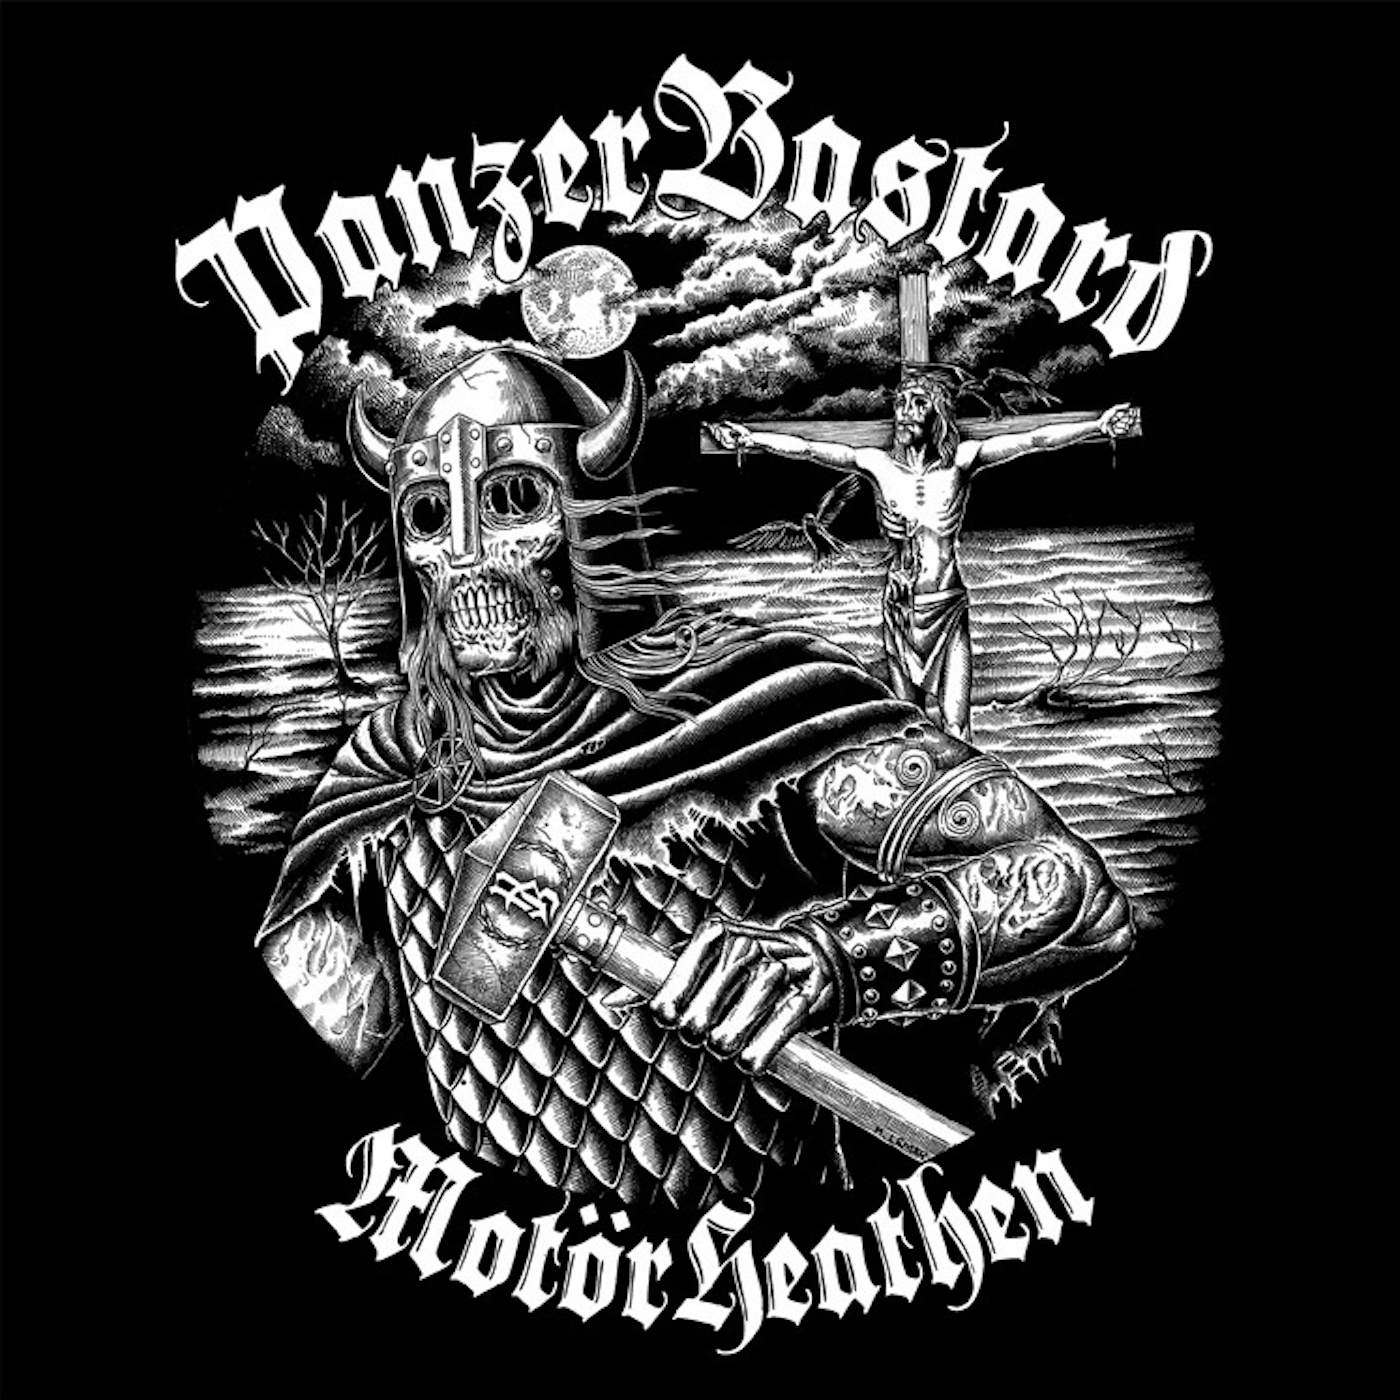 PanzerBastard Motorheathen Vinyl Record